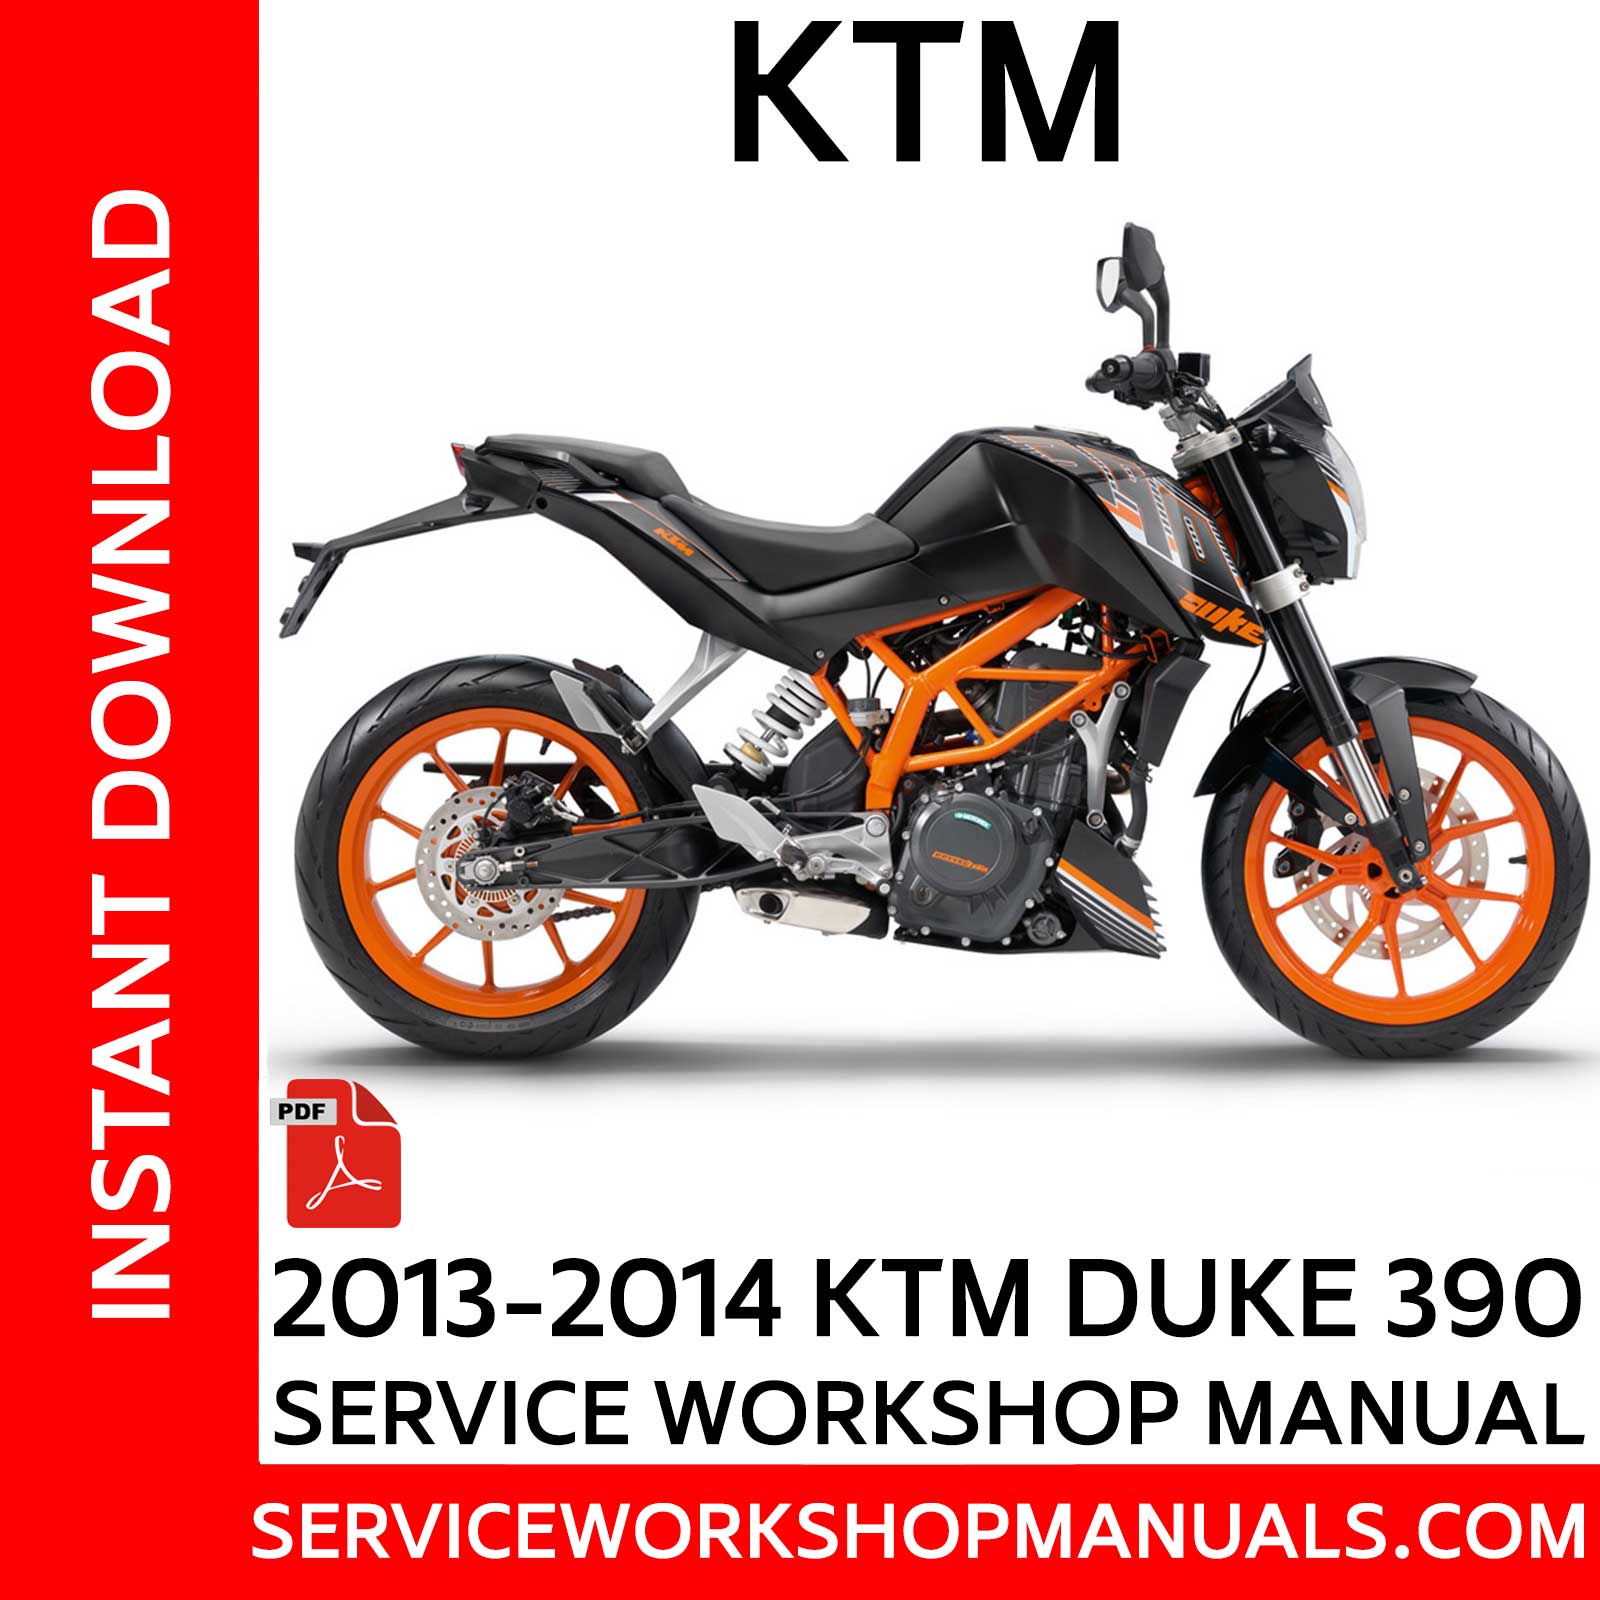 KTM 390 Duke 2013-2014 Service Workshop Manual - Service Workshop Manuals